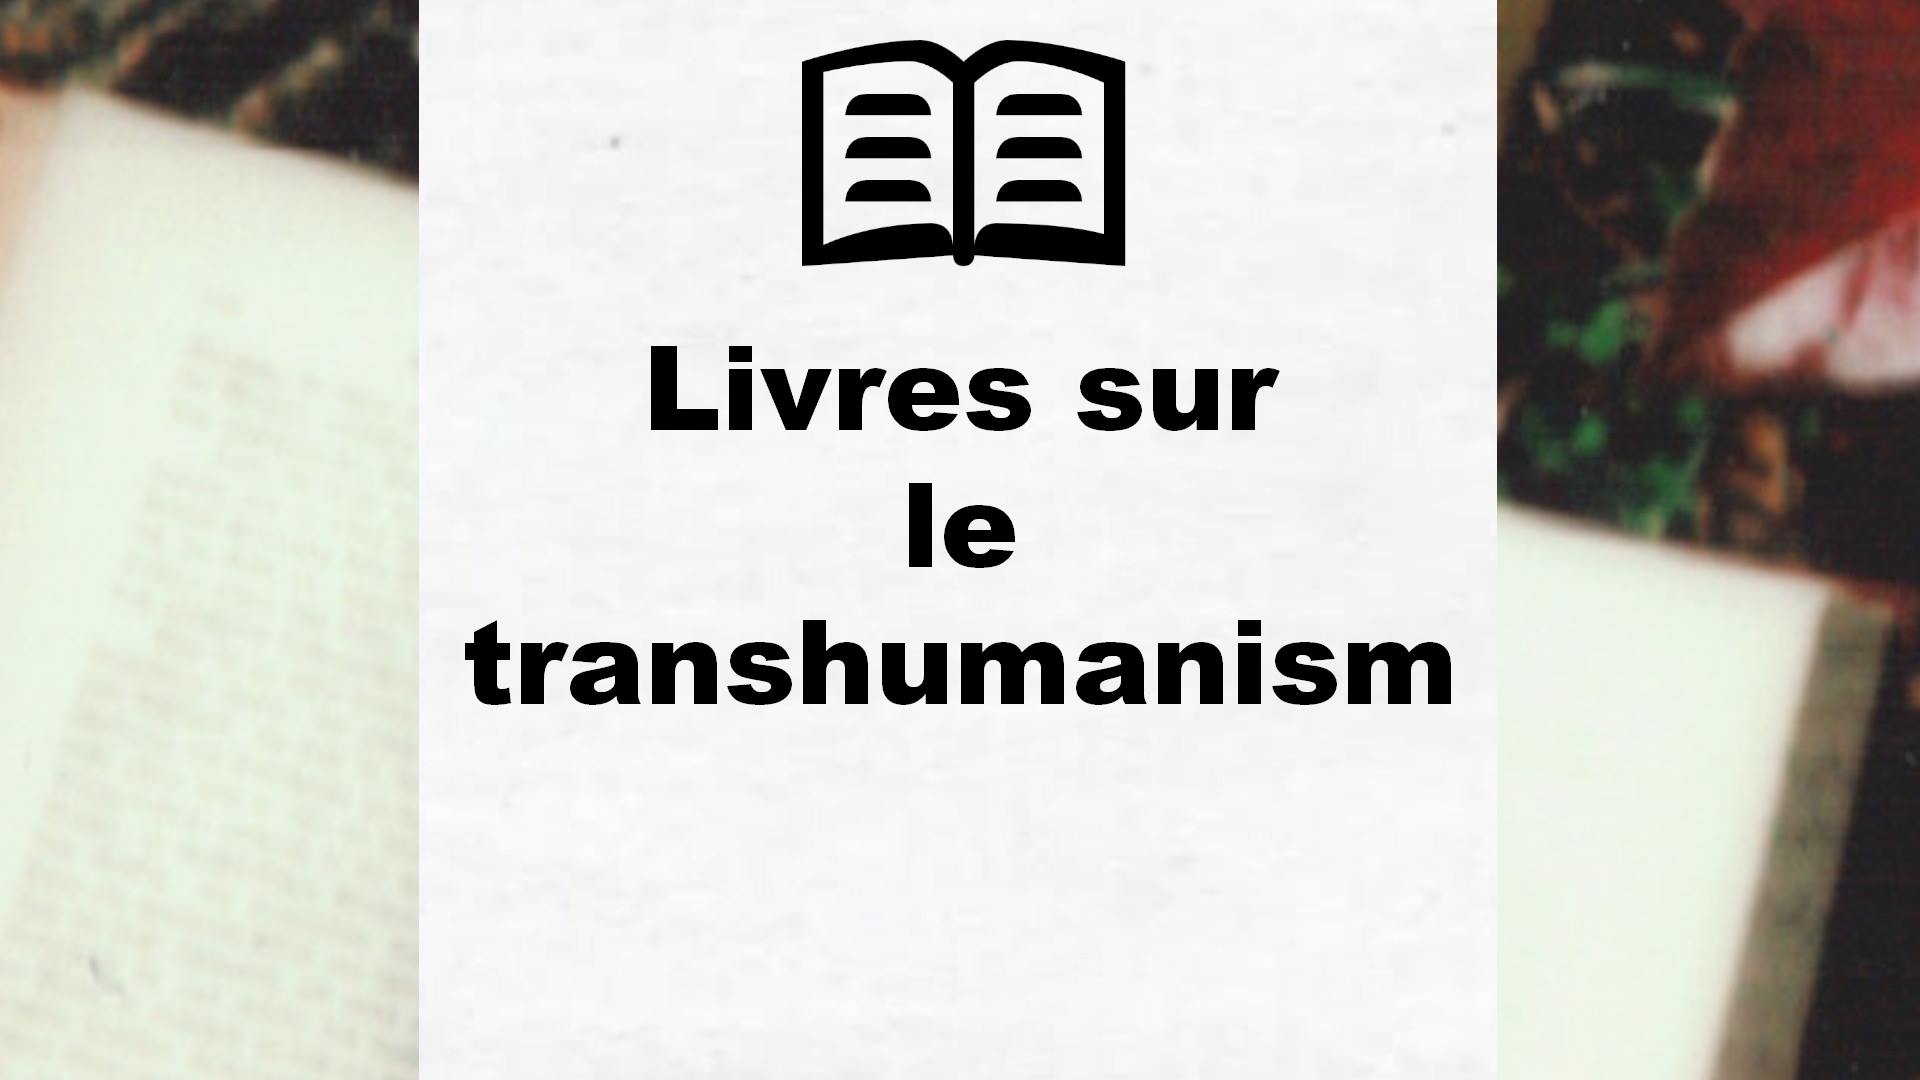 Livres sur le transhumanisme